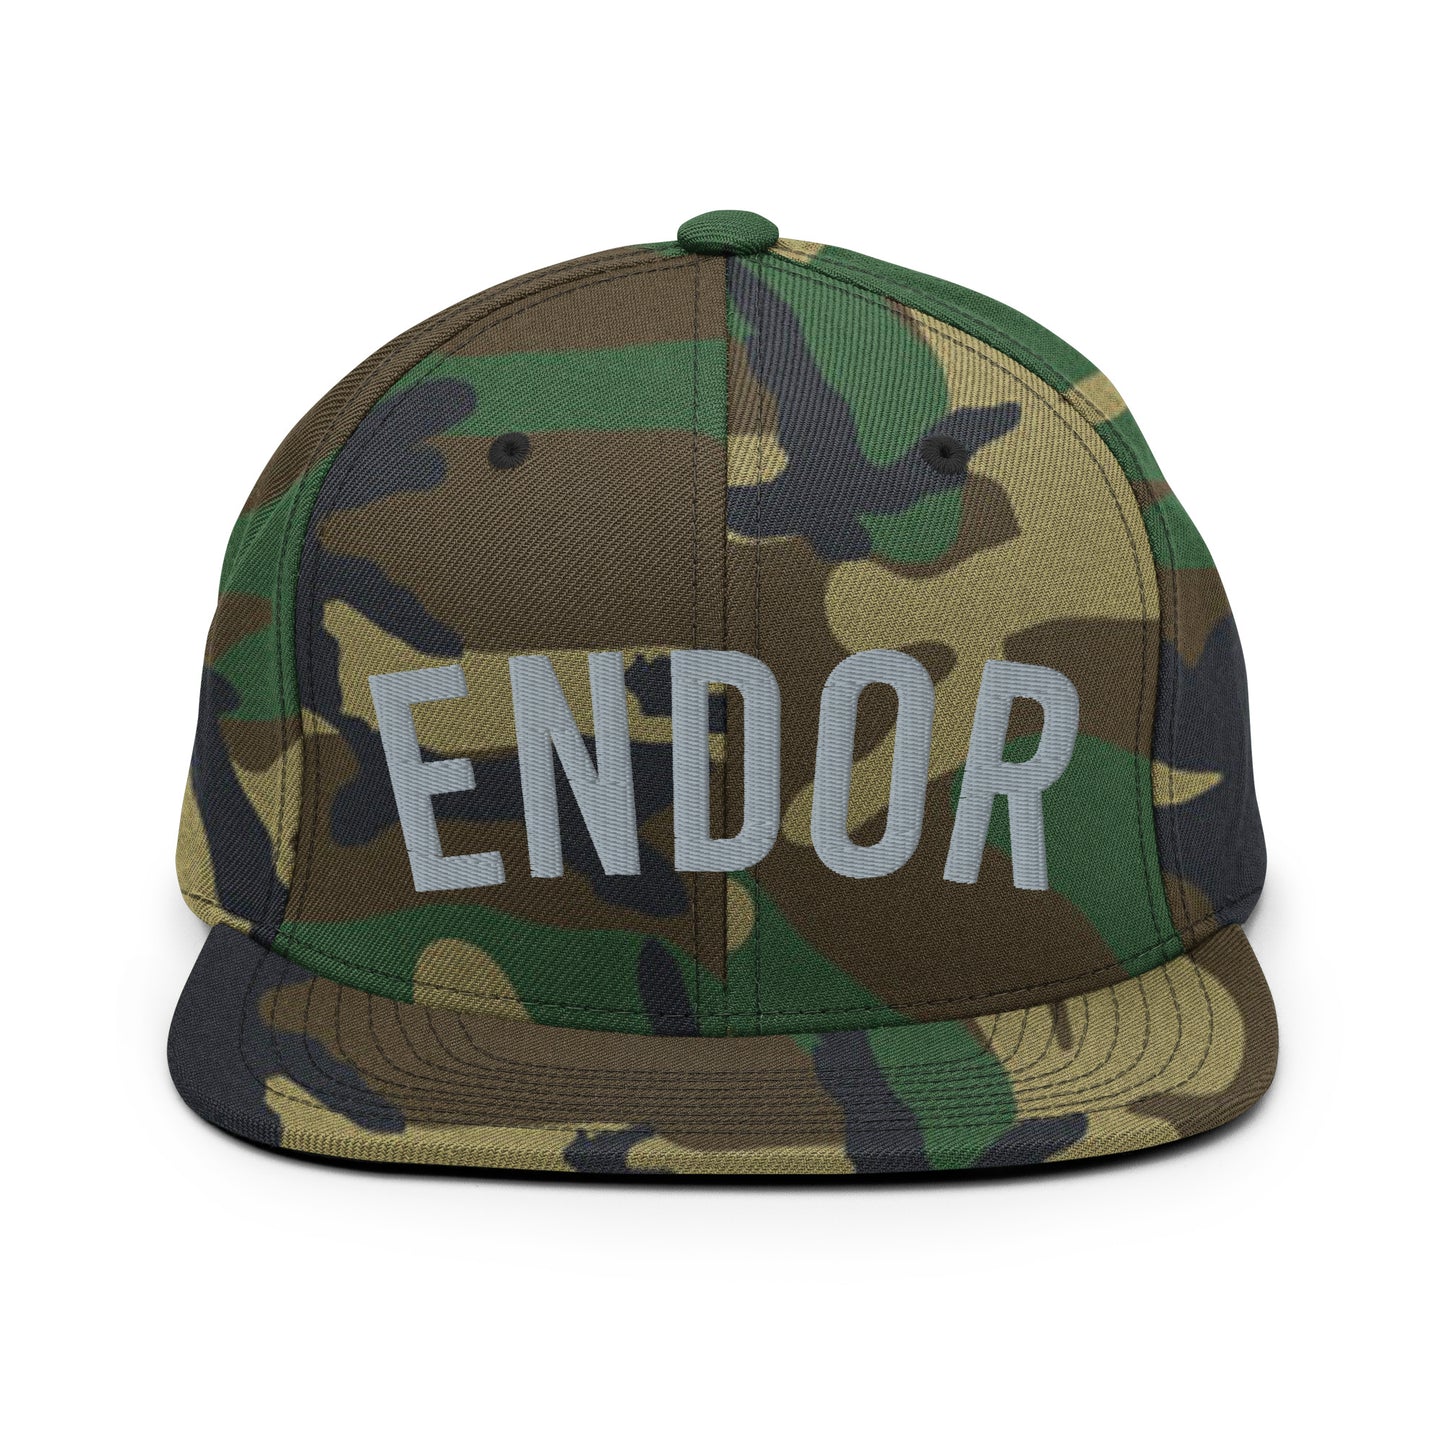 Endor Home Team snapback hat